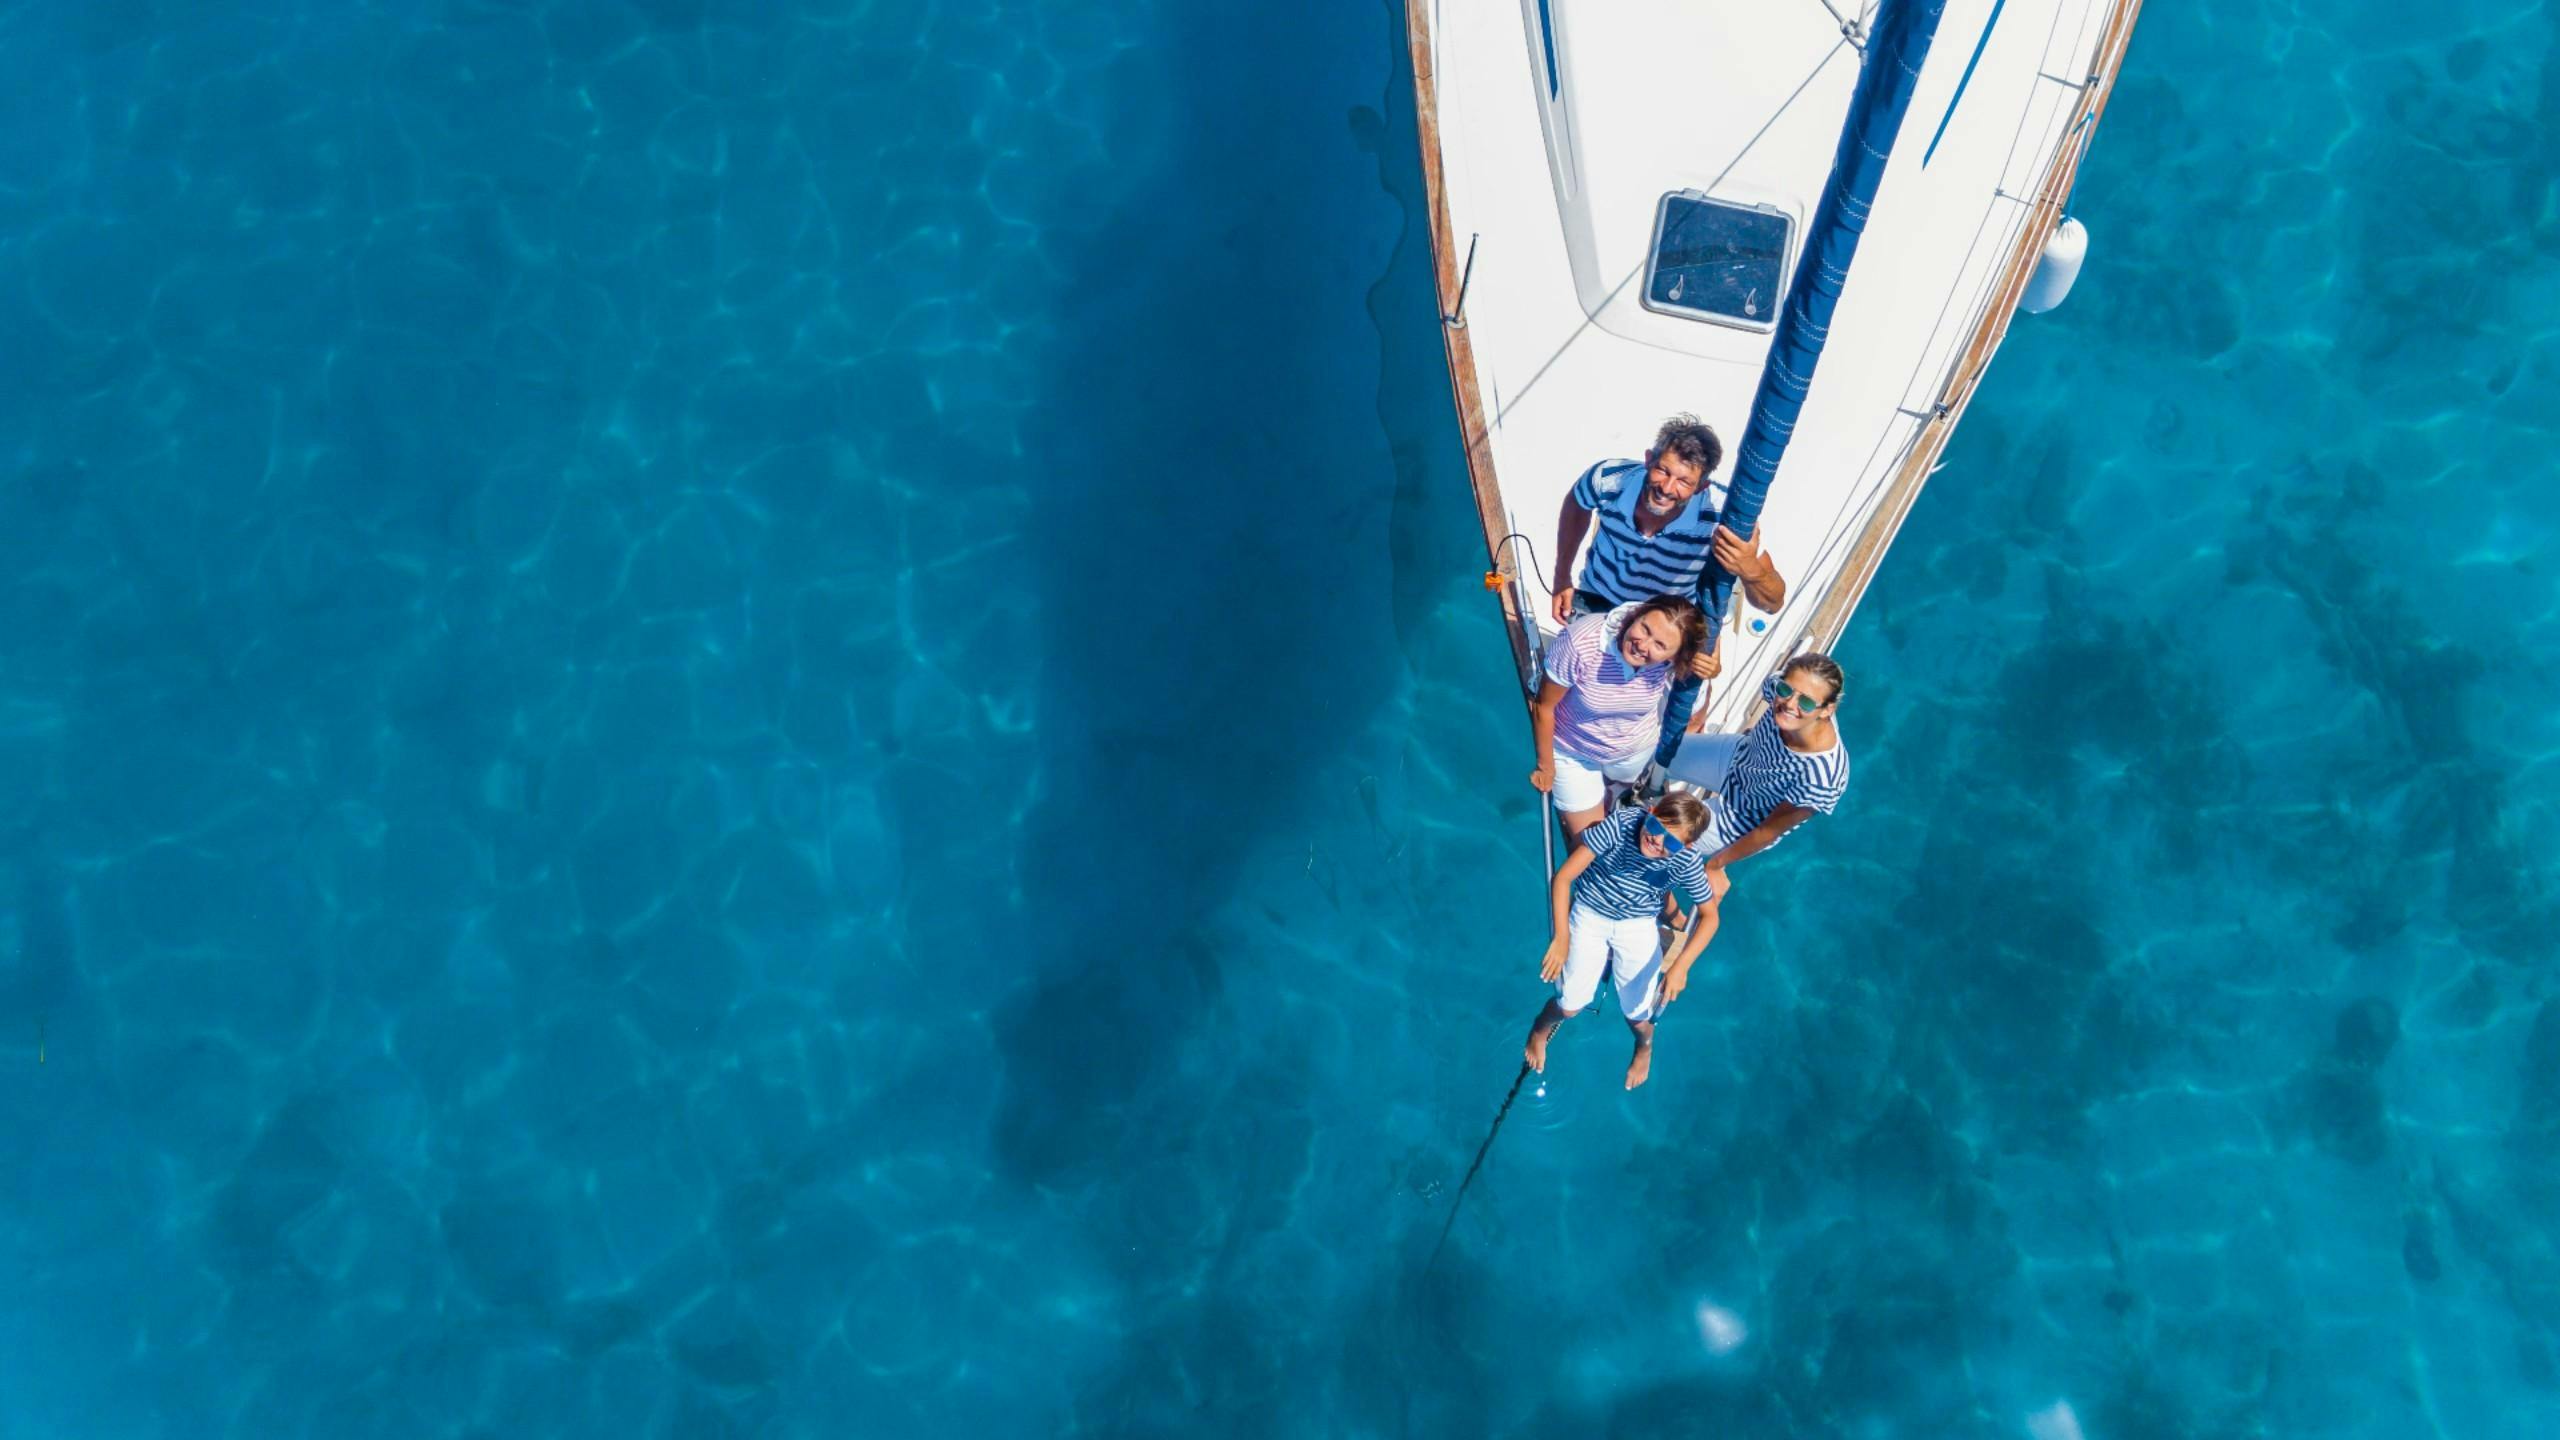 Una familia navega en un barco alquilado por aguas azules y cristalinas del océano.